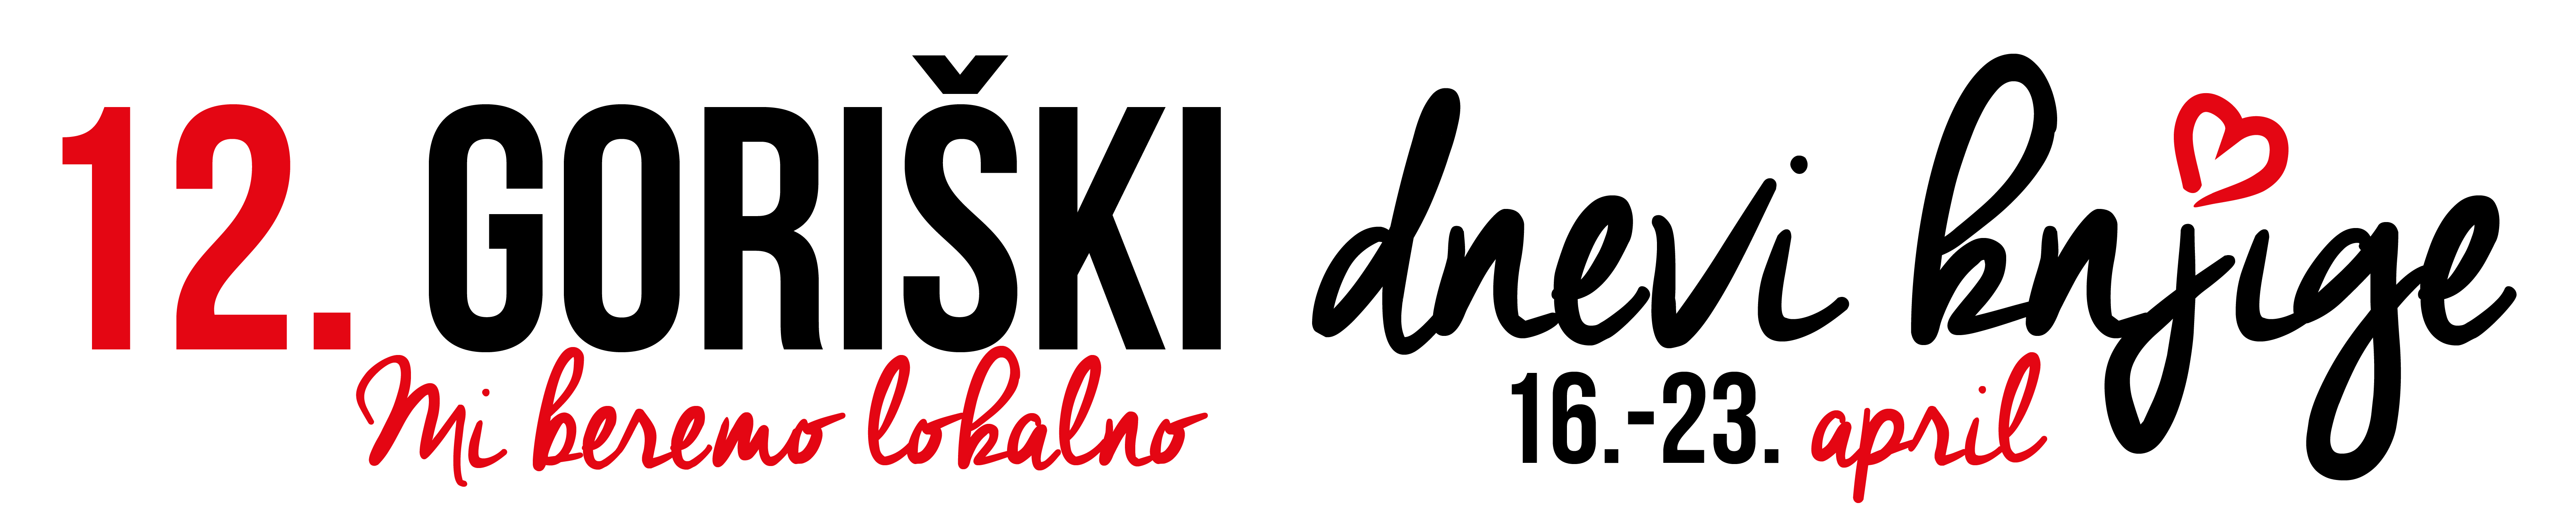 06 Goriski dnevi knjige logo banner podolgovati 2018 01